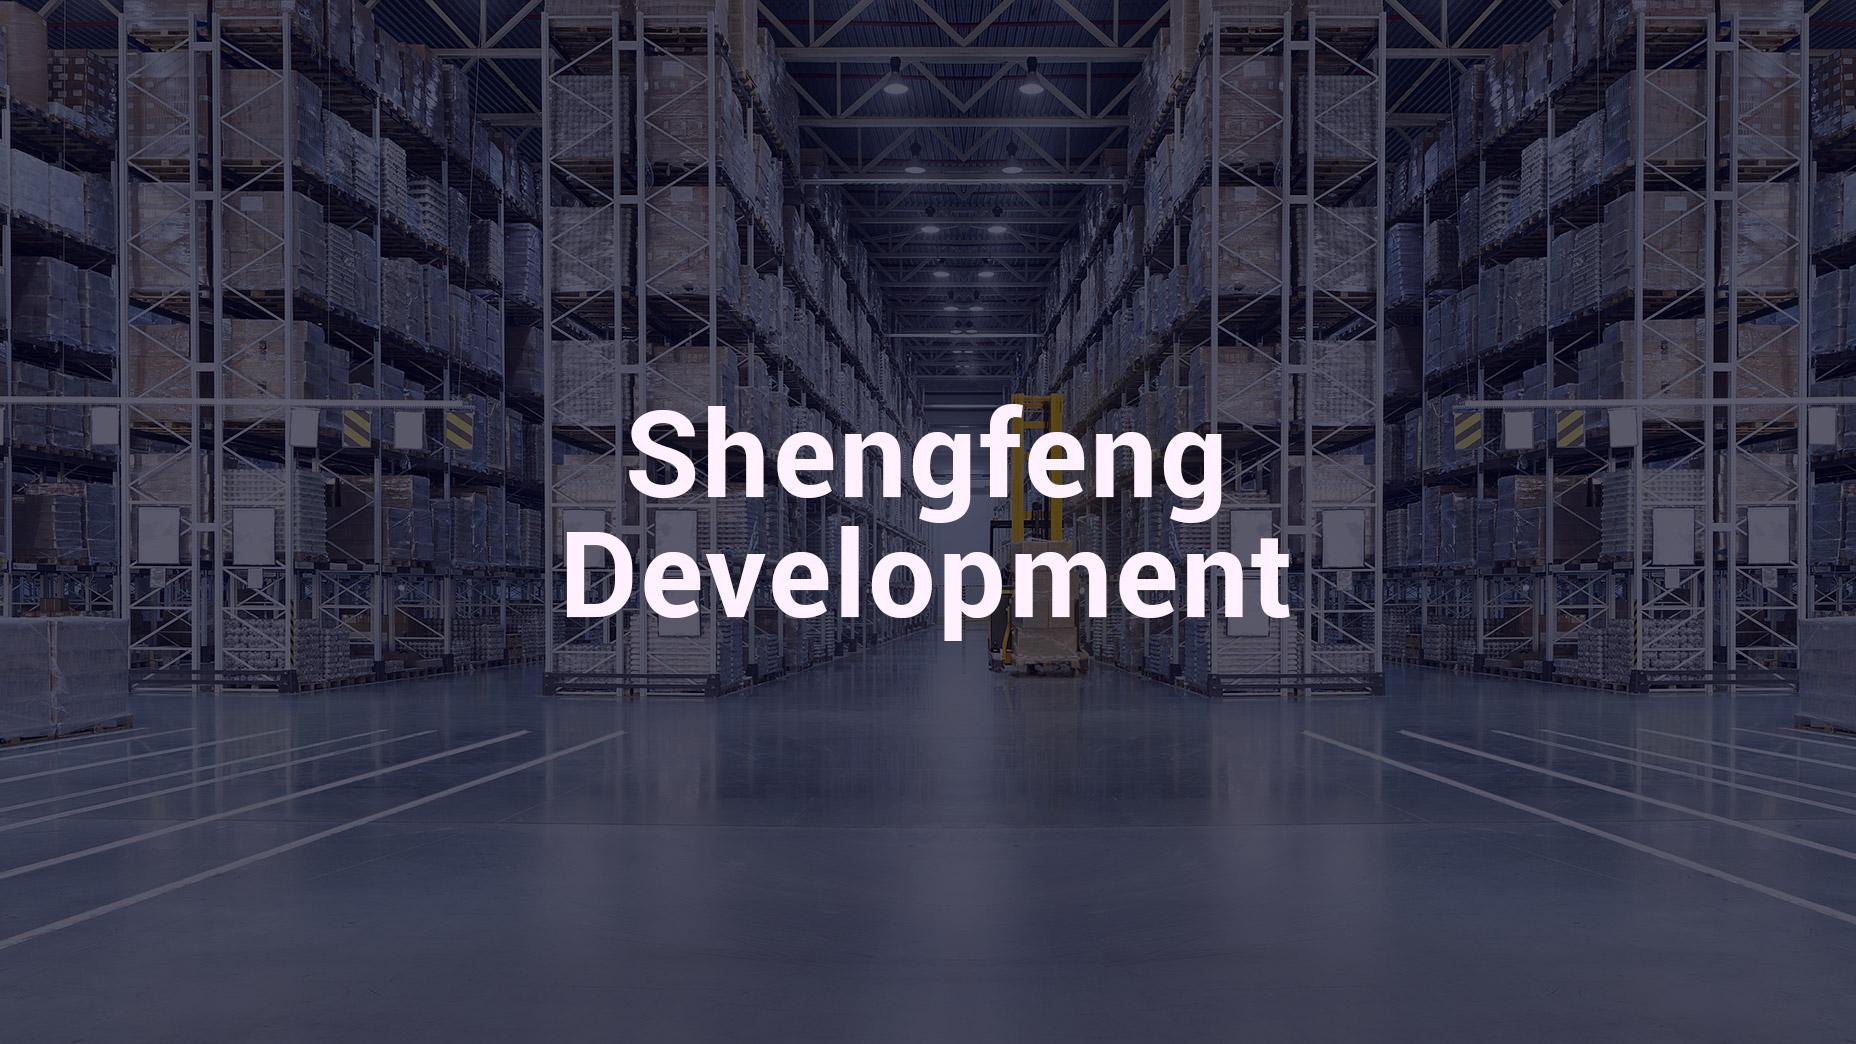 การเสนอขายหุ้นของ Shengfeng Development: ผู้ให้บริการโลจิสติกส์ตามสัญญาในจีน